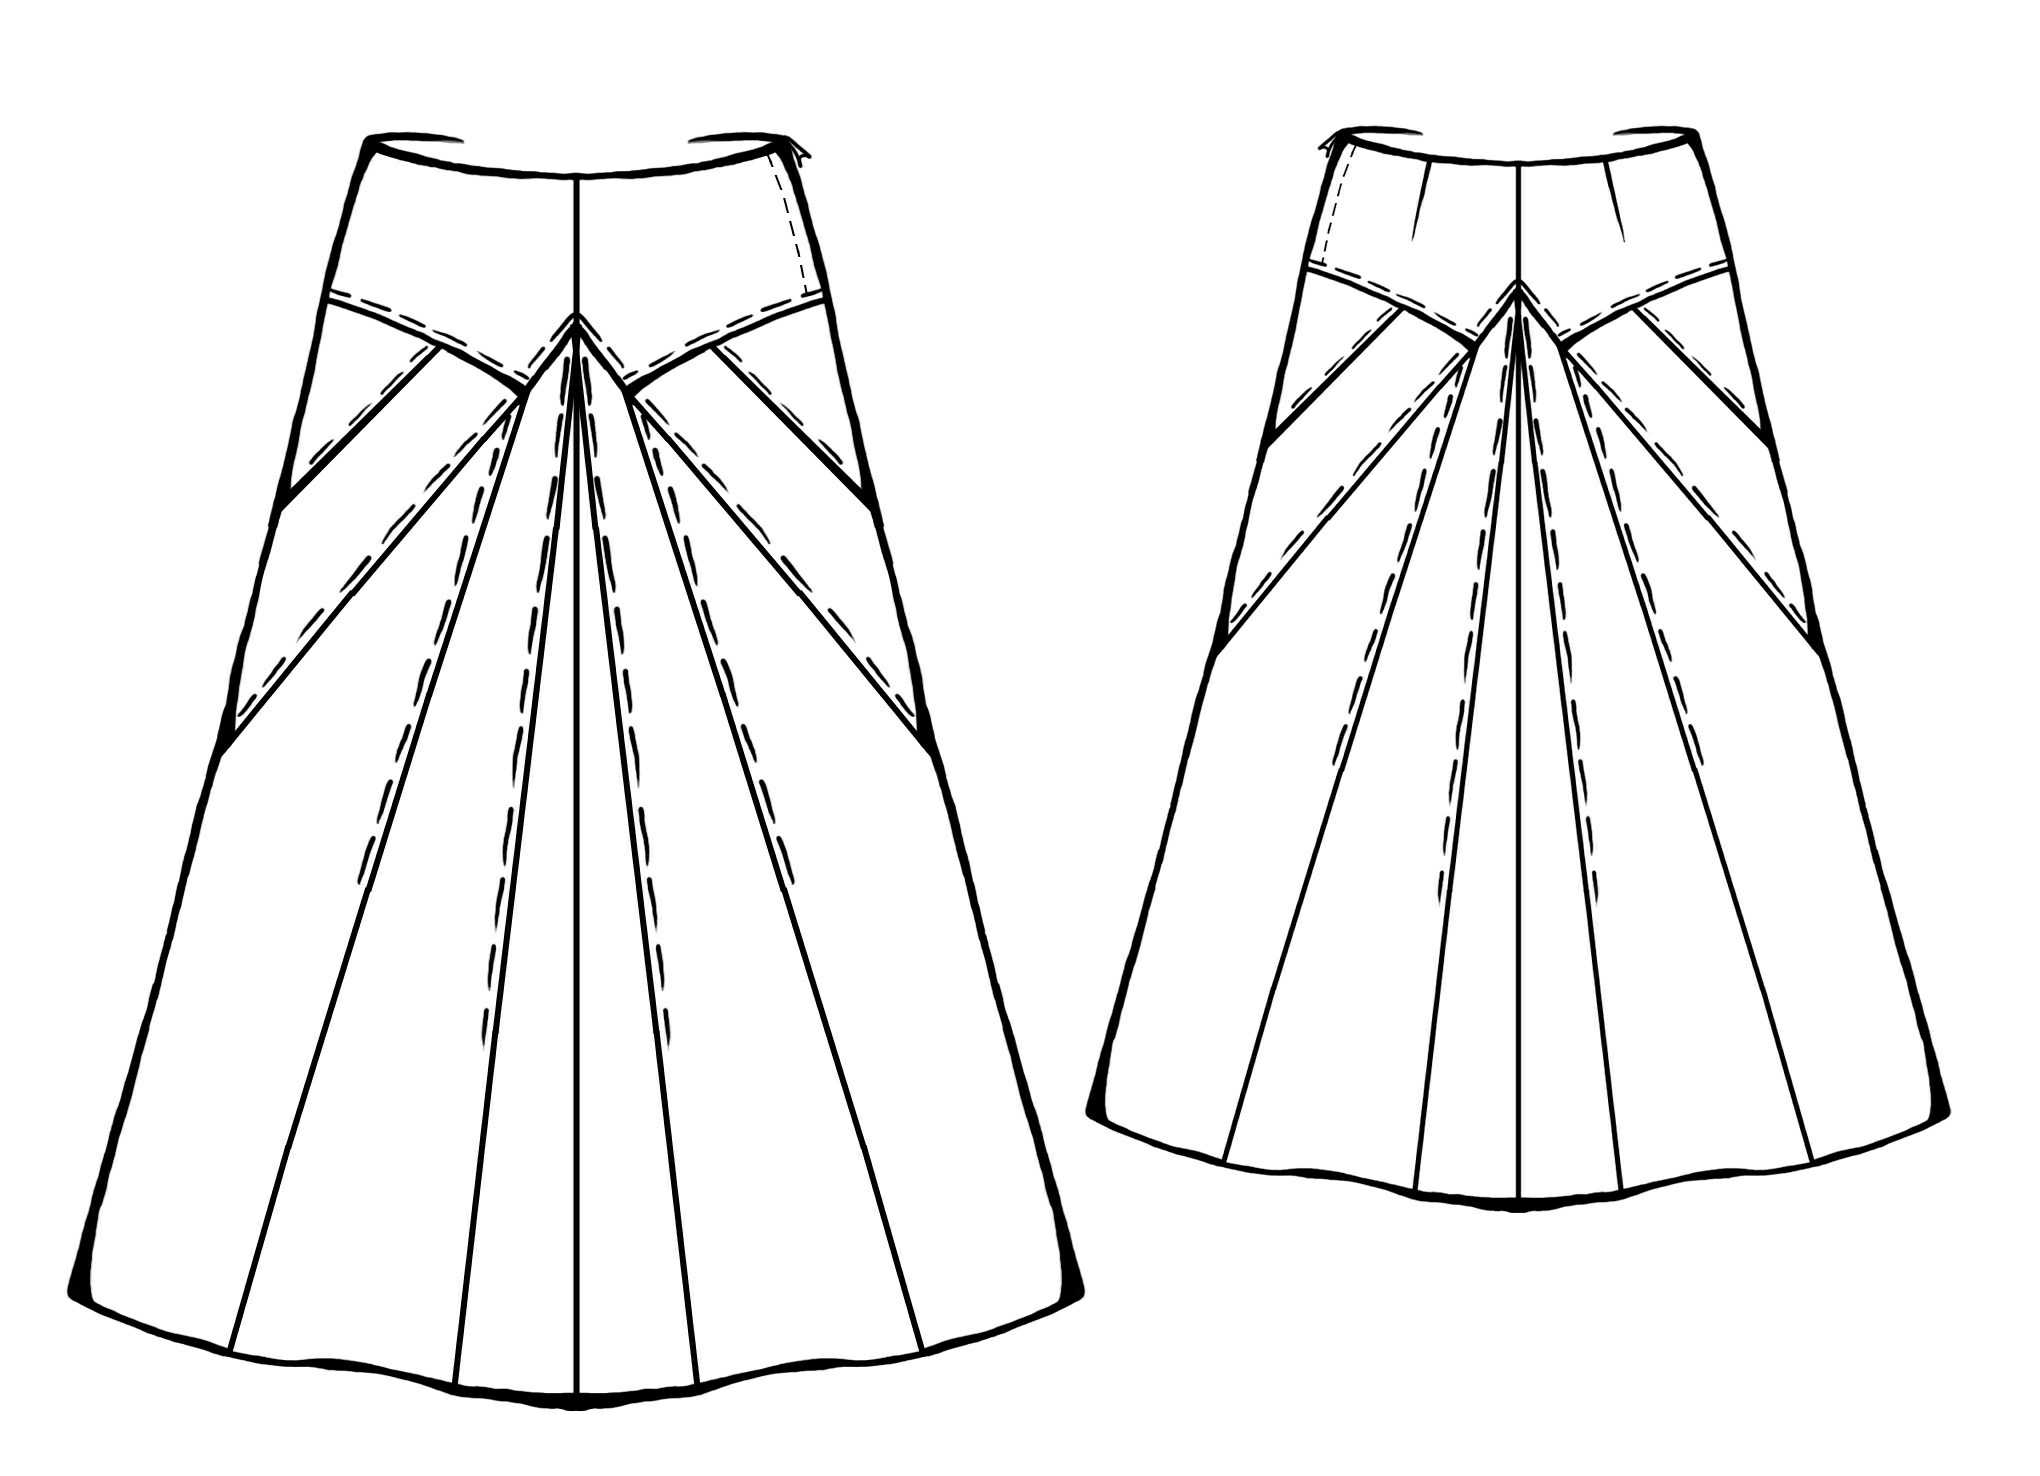 Технический эскиз юбки